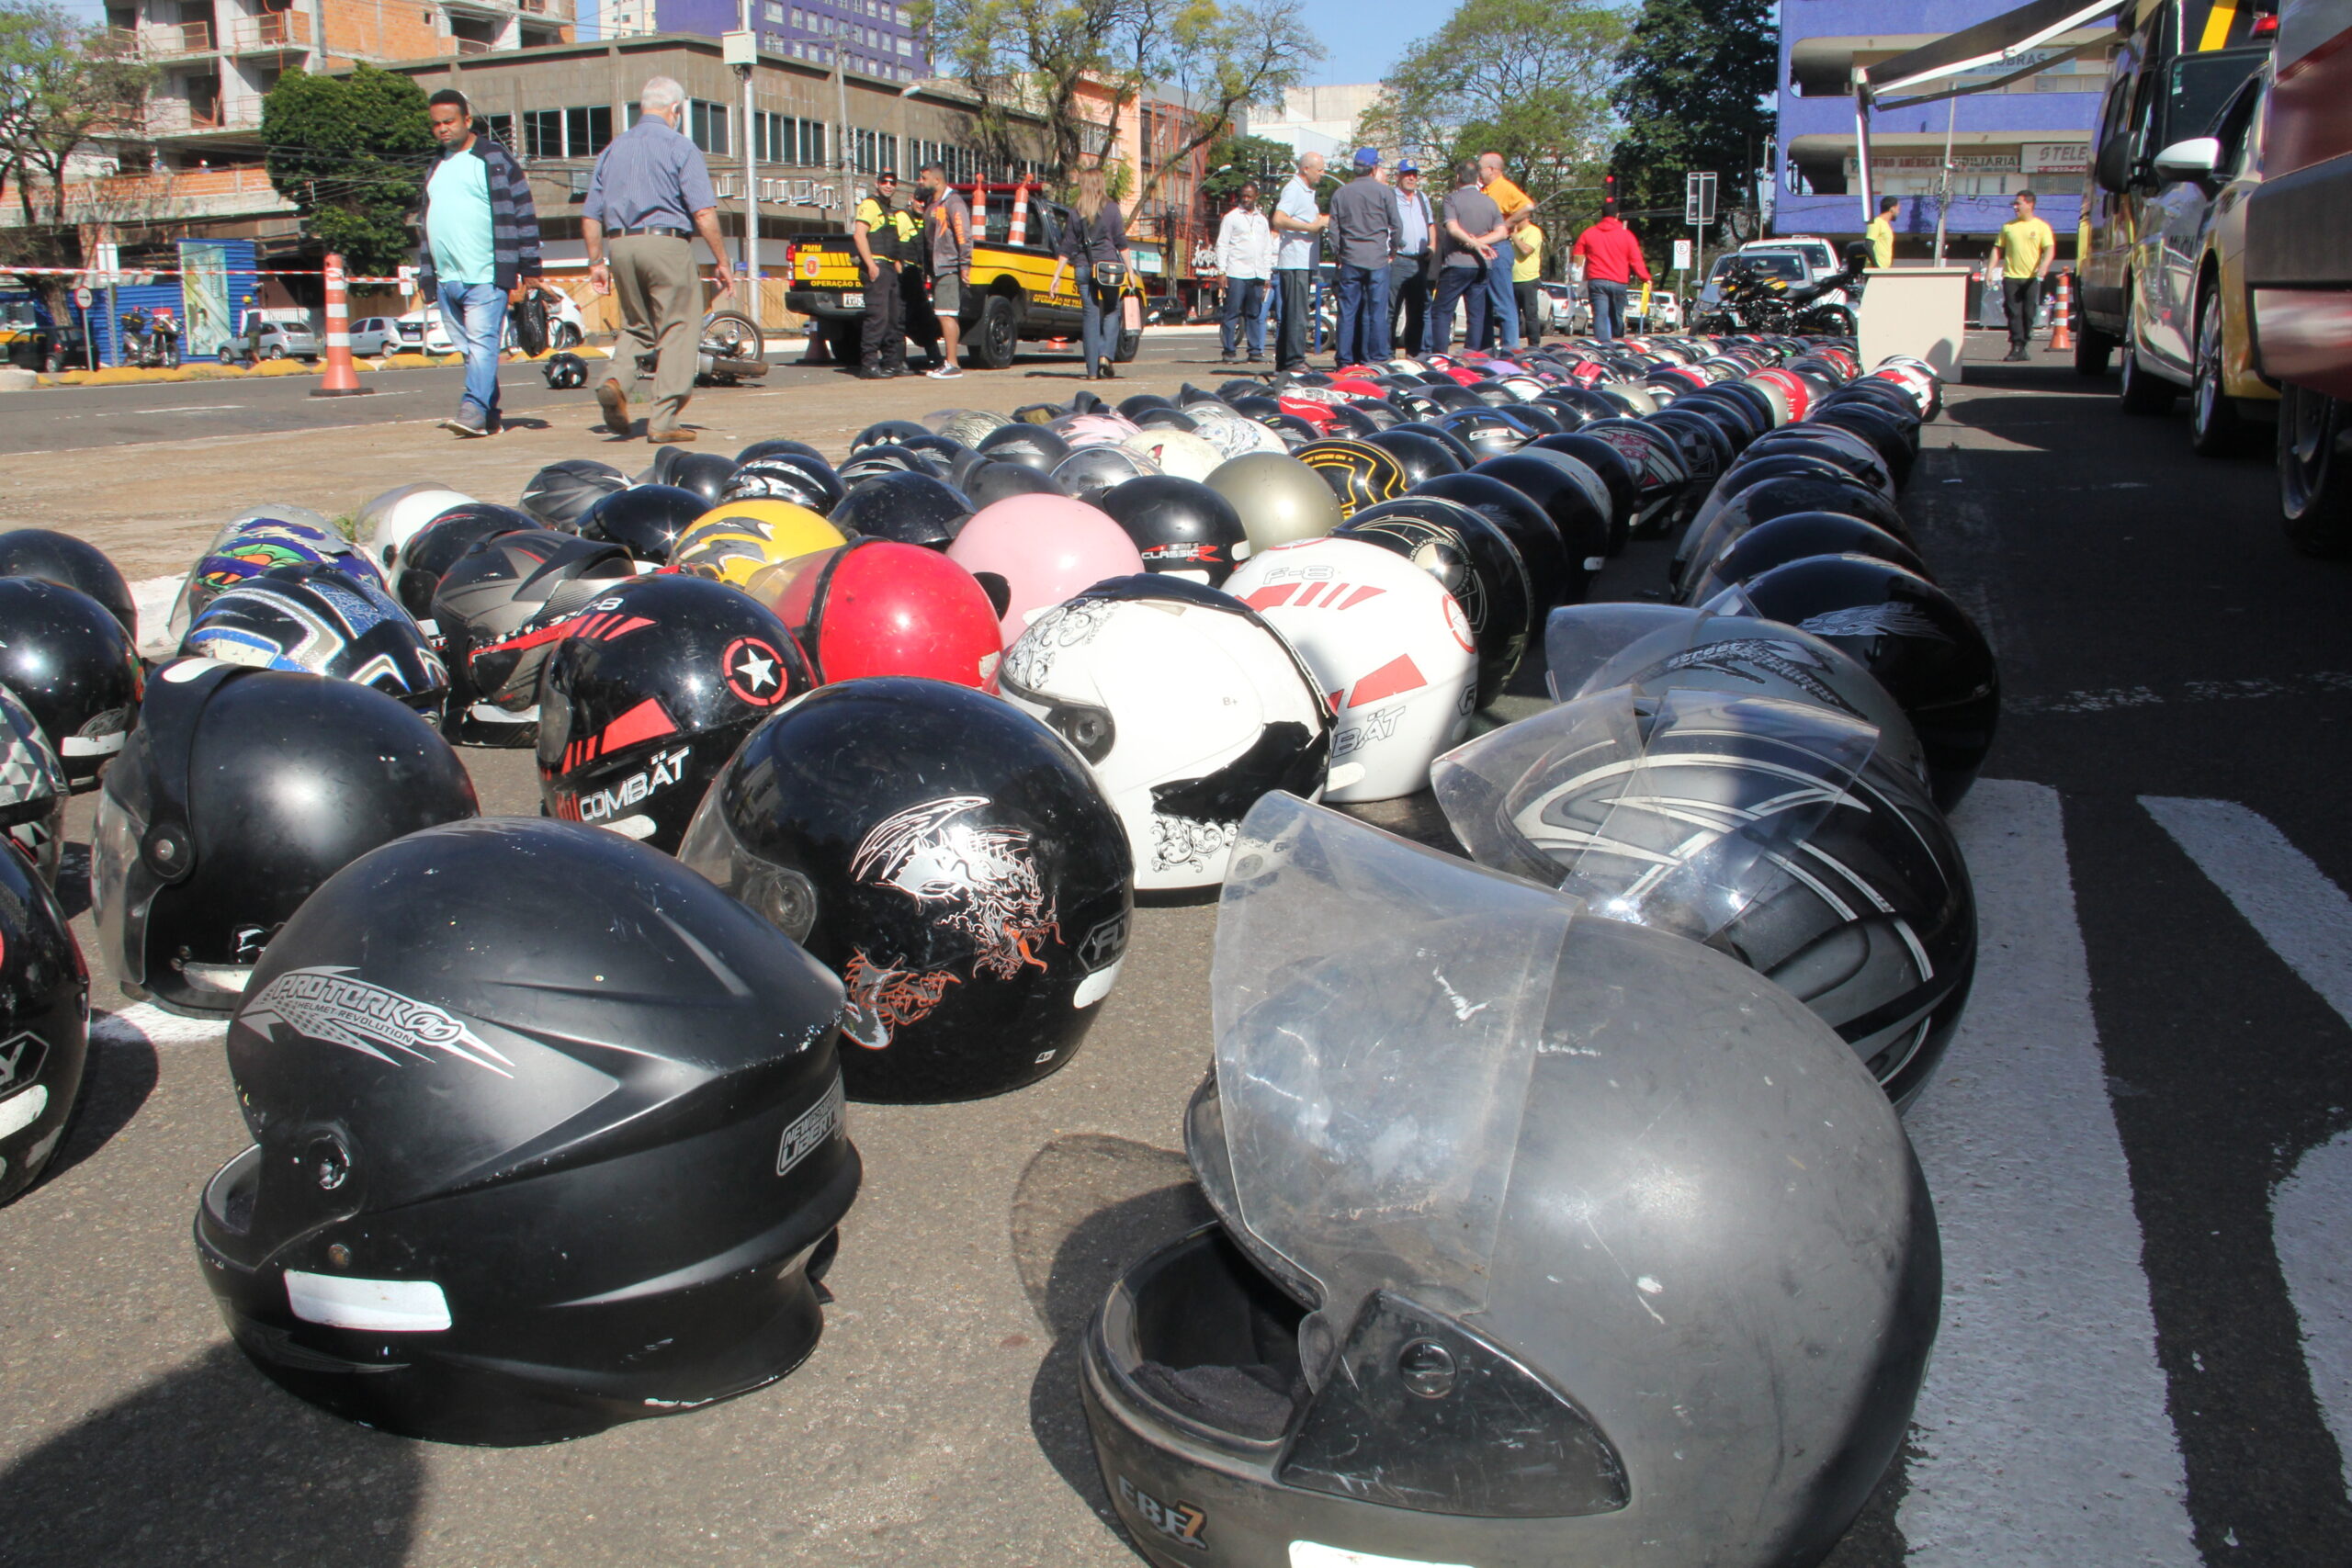 Maringá: Para ampliar segurança no trânsito, Prefeitura promove campanha com descontos de até 30% na compra de capacetes